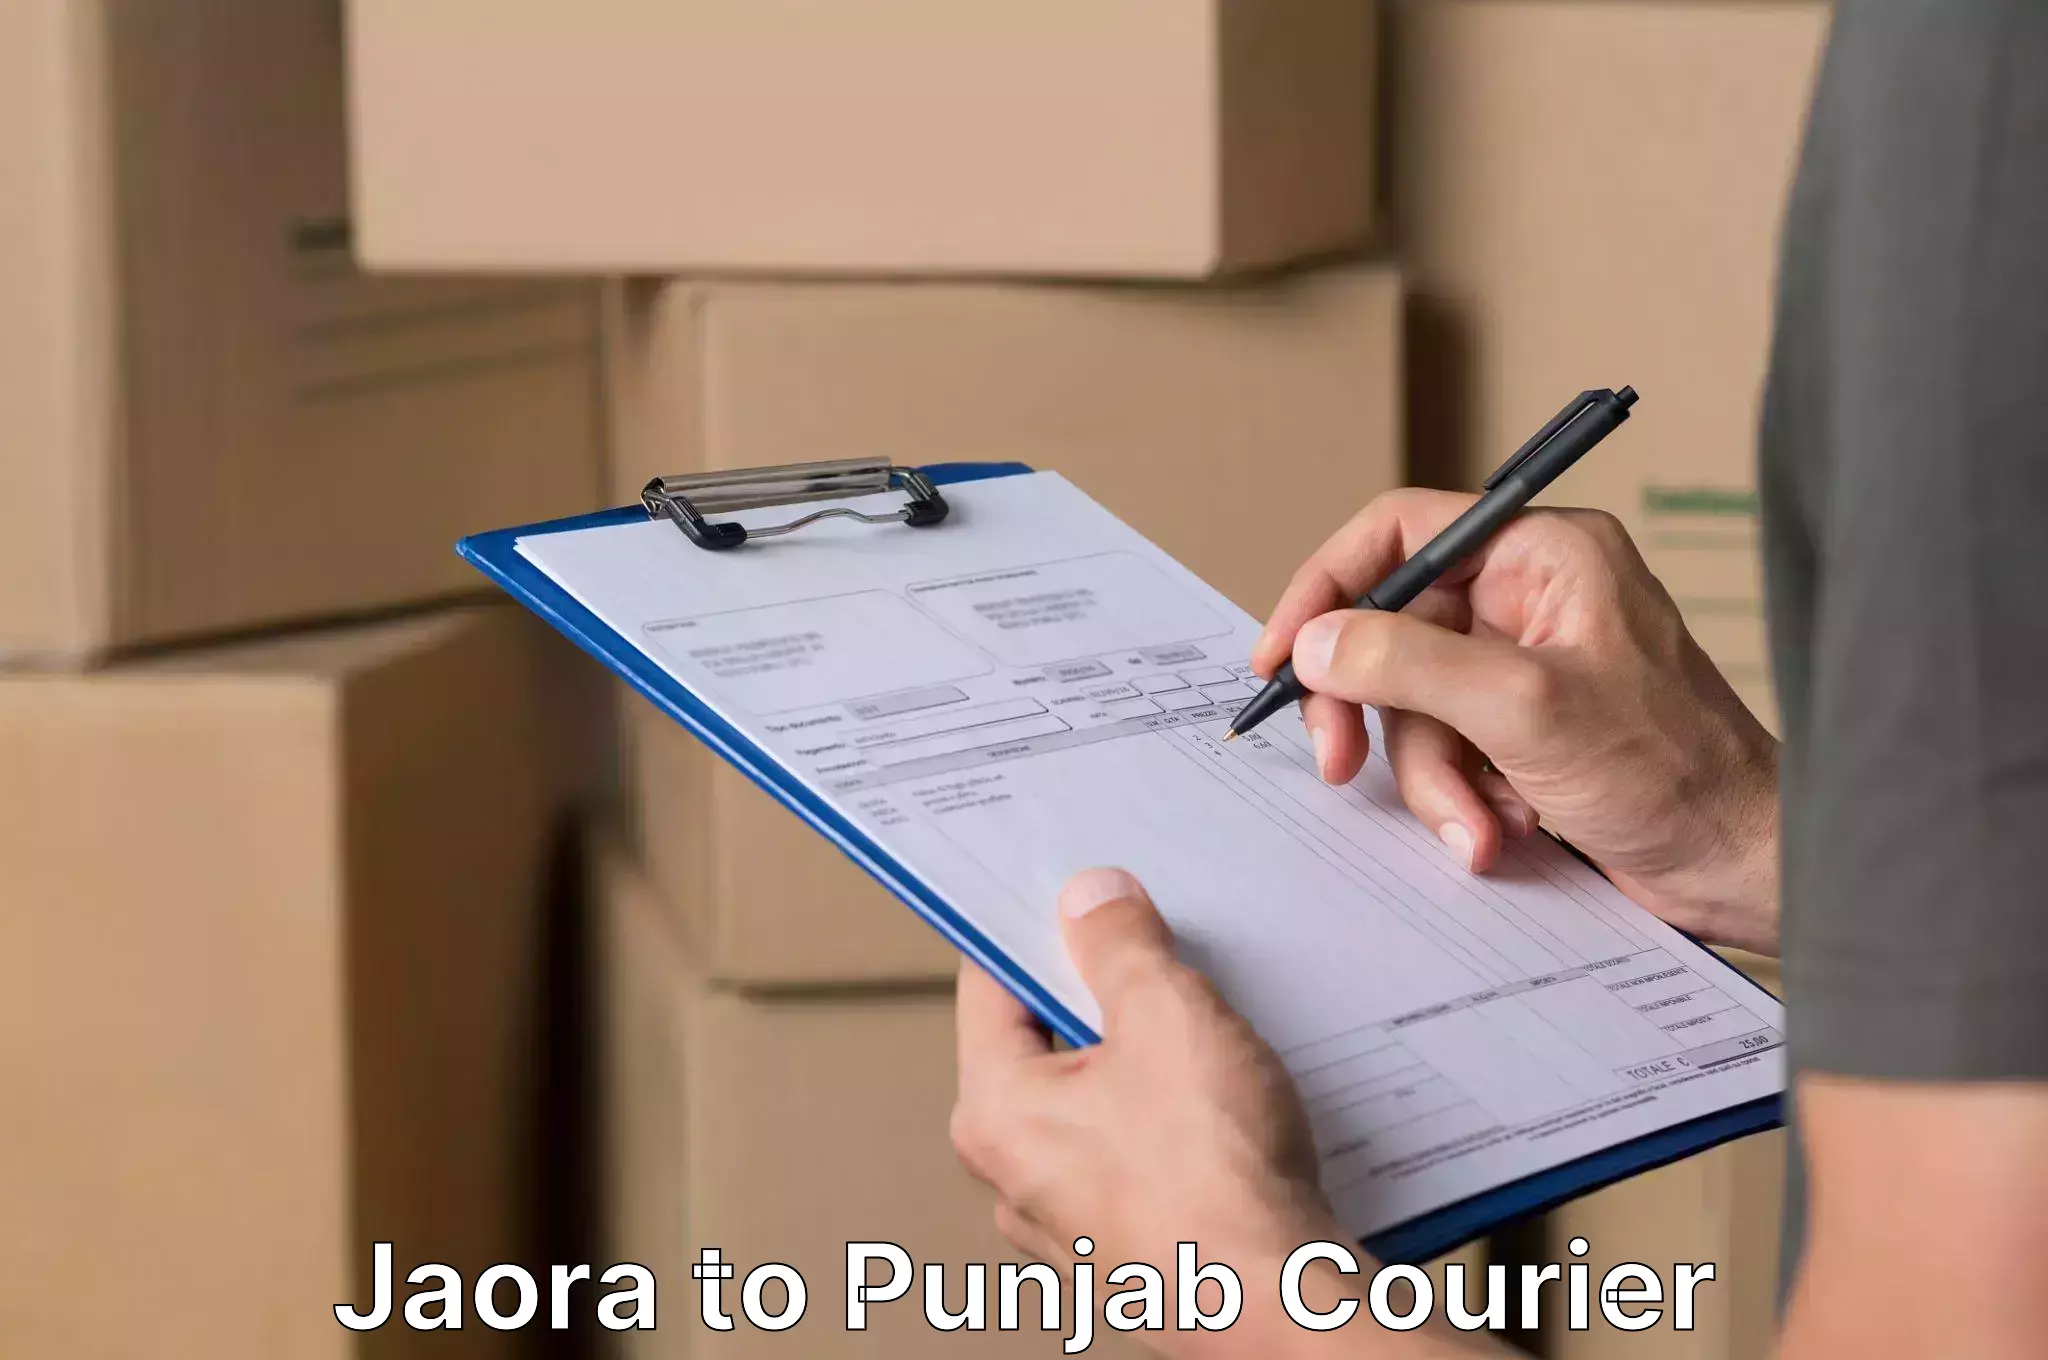 Furniture moving solutions Jaora to Punjab